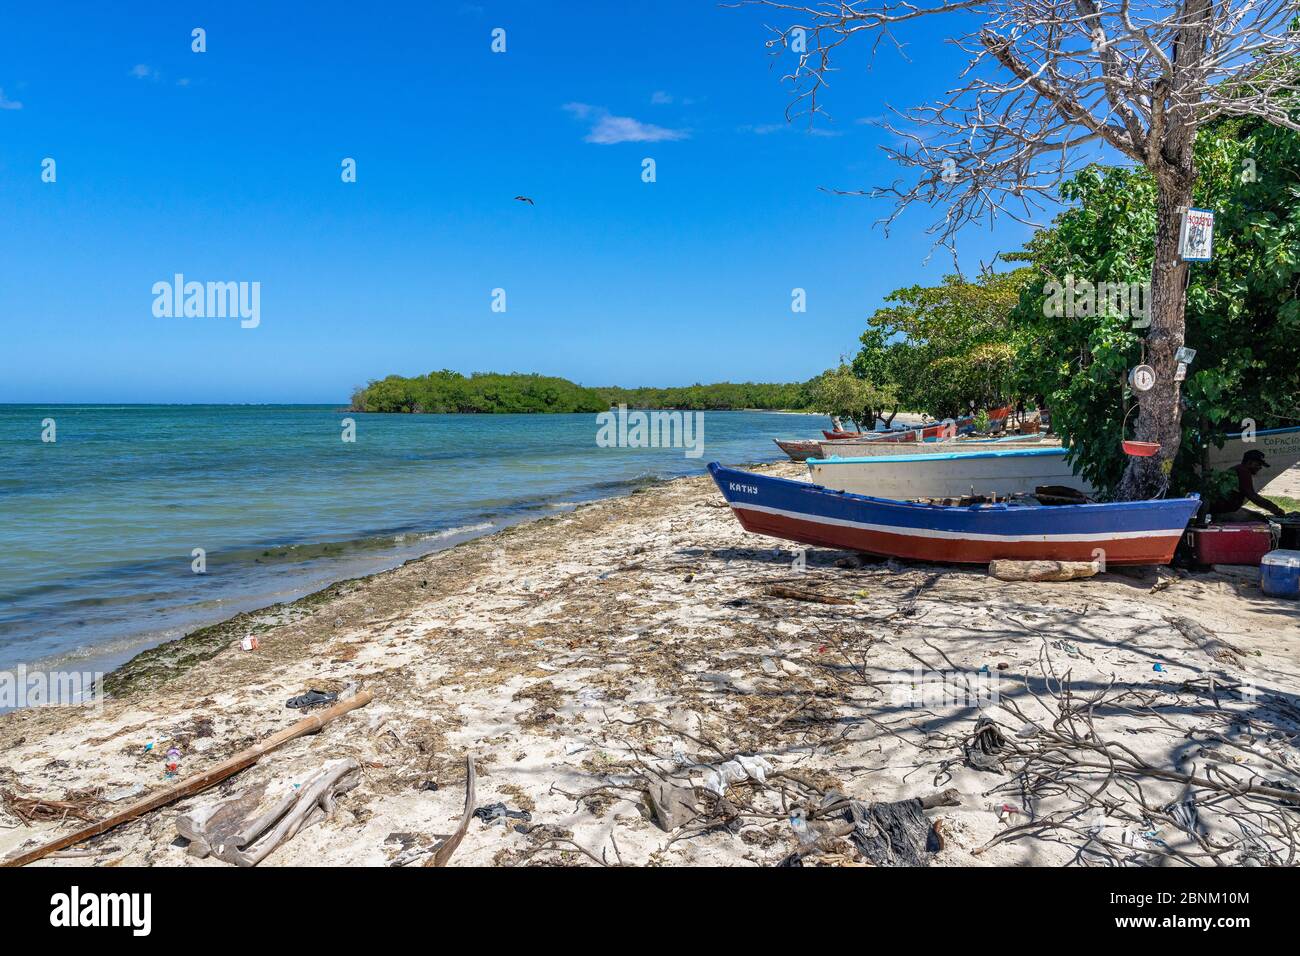 Amérique, Caraïbes, grandes Antilles, République Dominicaine, Barahona, scène de plage à Playa Luci Landia del sur Banque D'Images